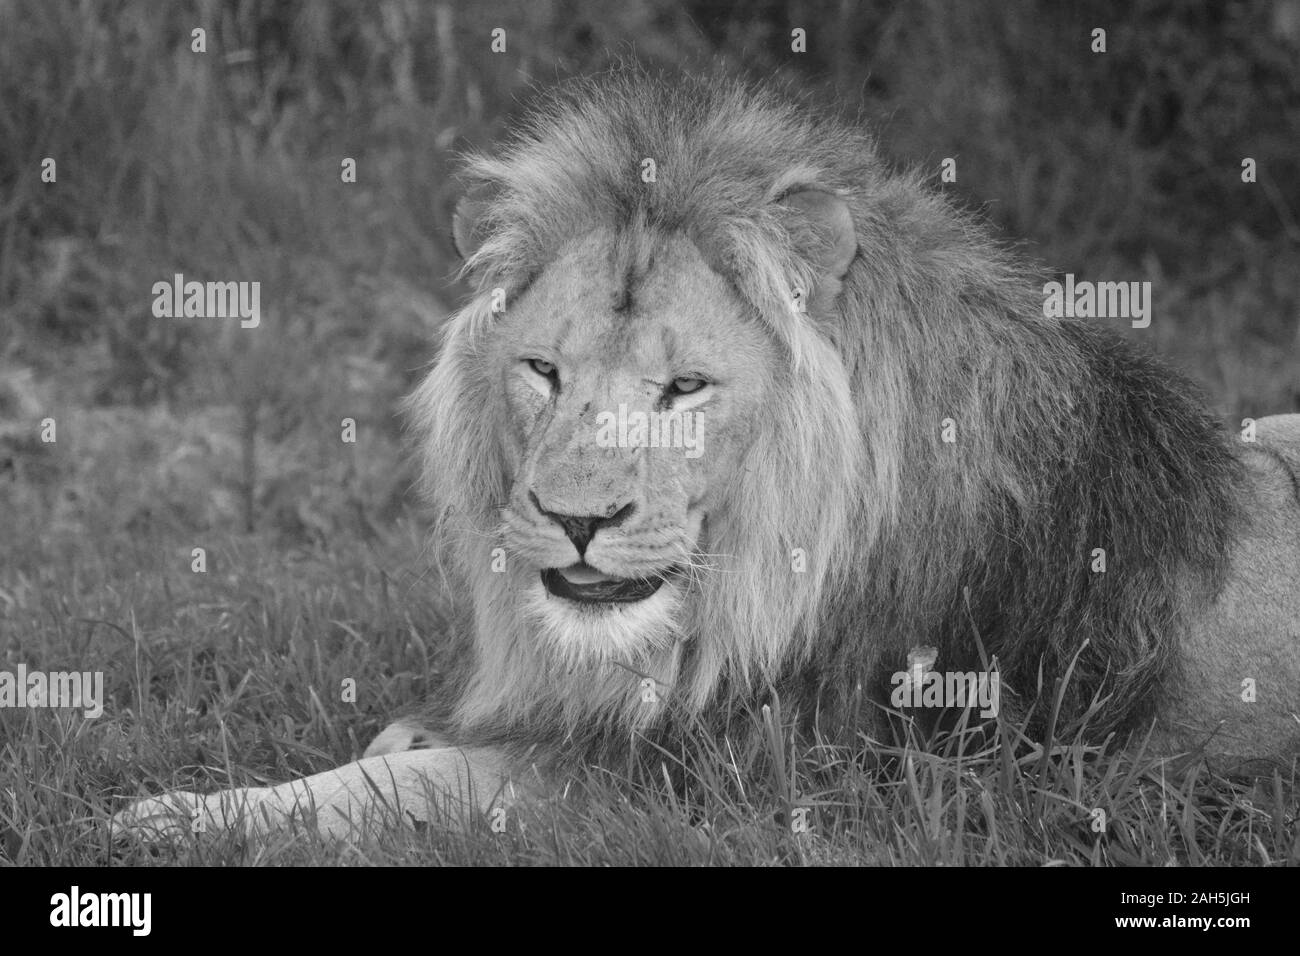 Lion mâle à Longleat Safari Park, WARMINSTER, Wiltshire, Angleterre, Royaume-Uni. Photographie noir et blanc Banque D'Images